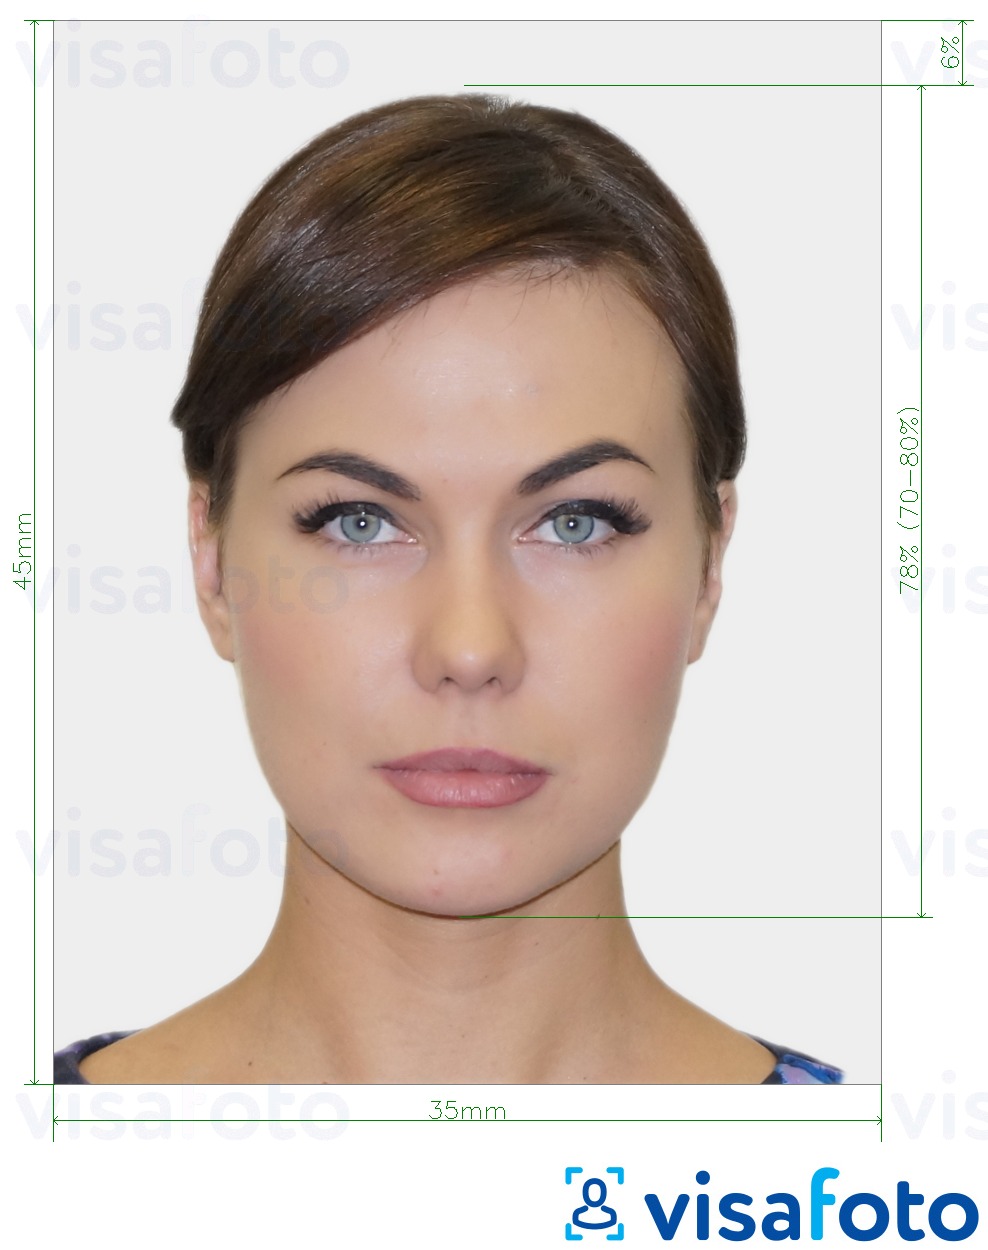 Nuotraukos pavyzdys Biometrinio paso nuotrauka su tikslaus dydžio specifikacija